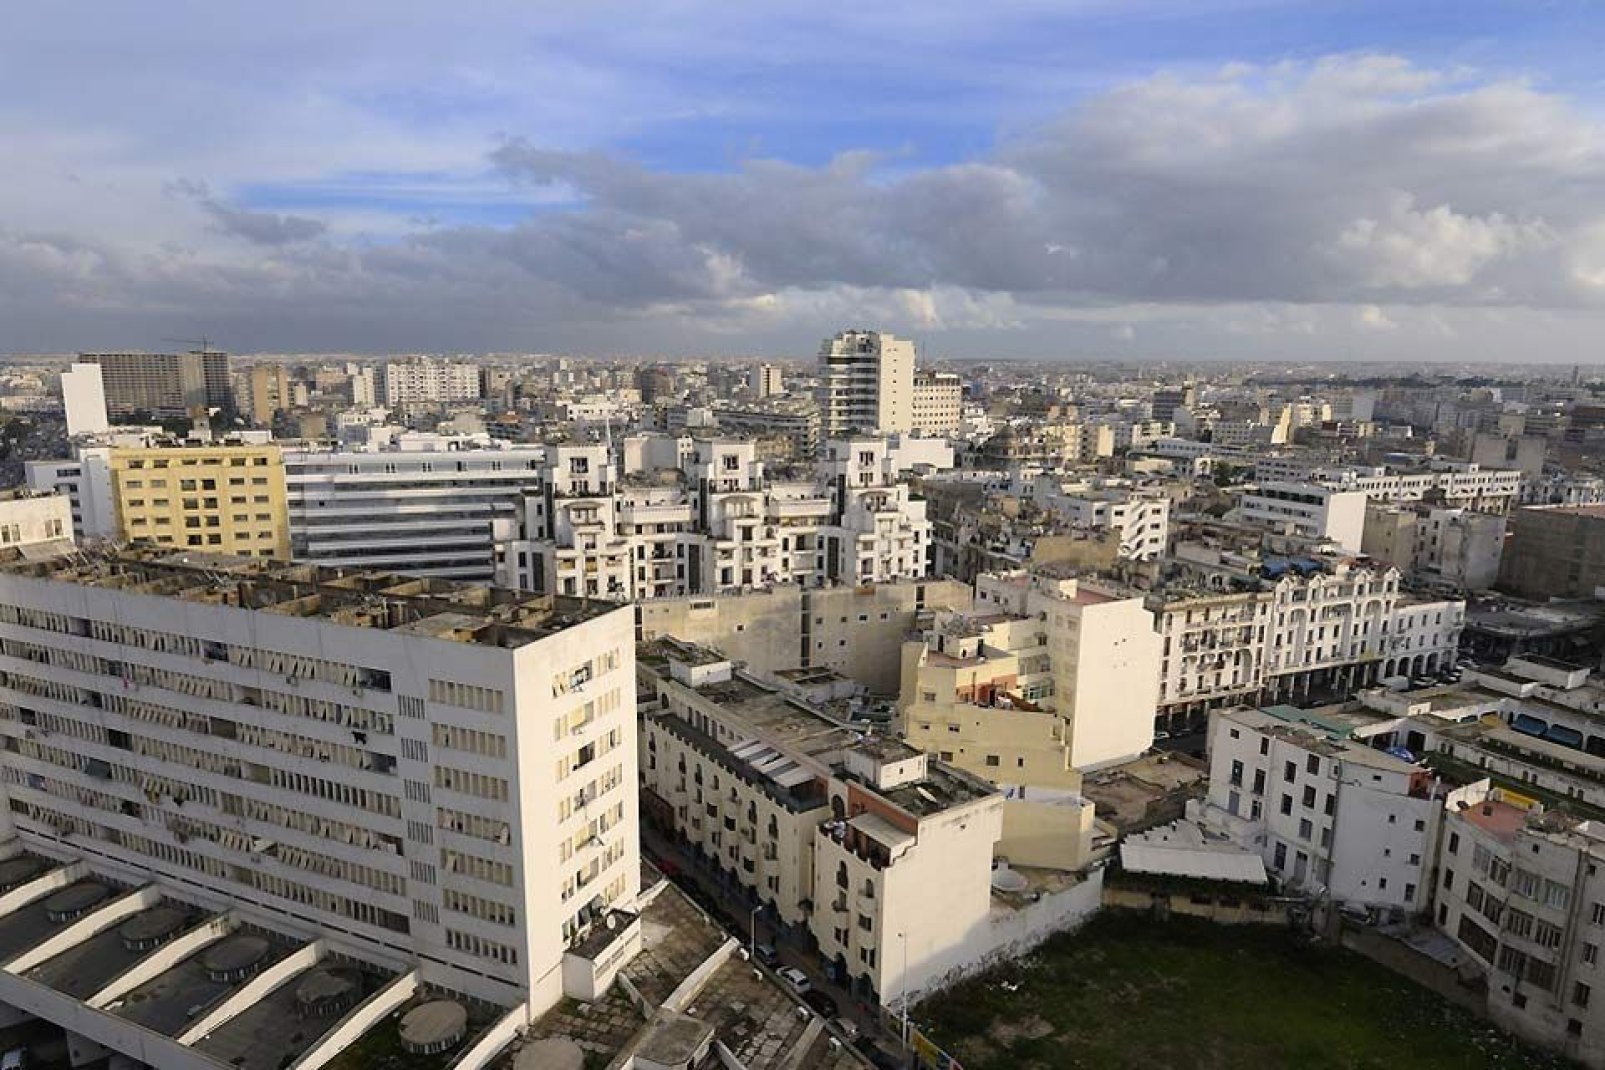 Casablanca ist eine moderne und dynamische Stadt, deren lebhafte Atmosphäre stark an europäische Städte erinnert.